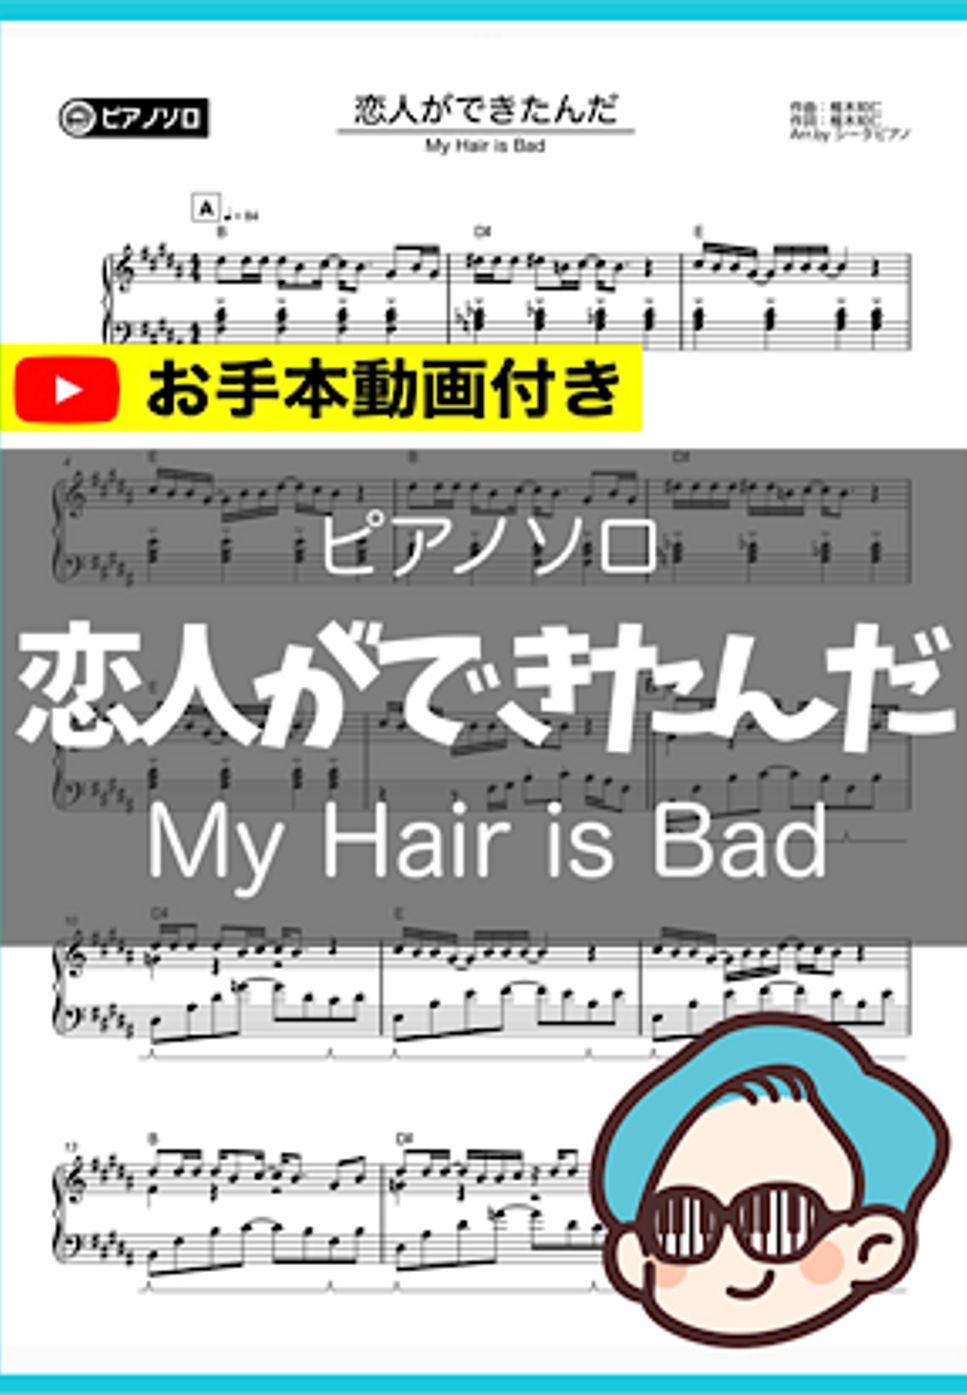 My Hair is Bad - 恋人ができたんだ by シータピアノ